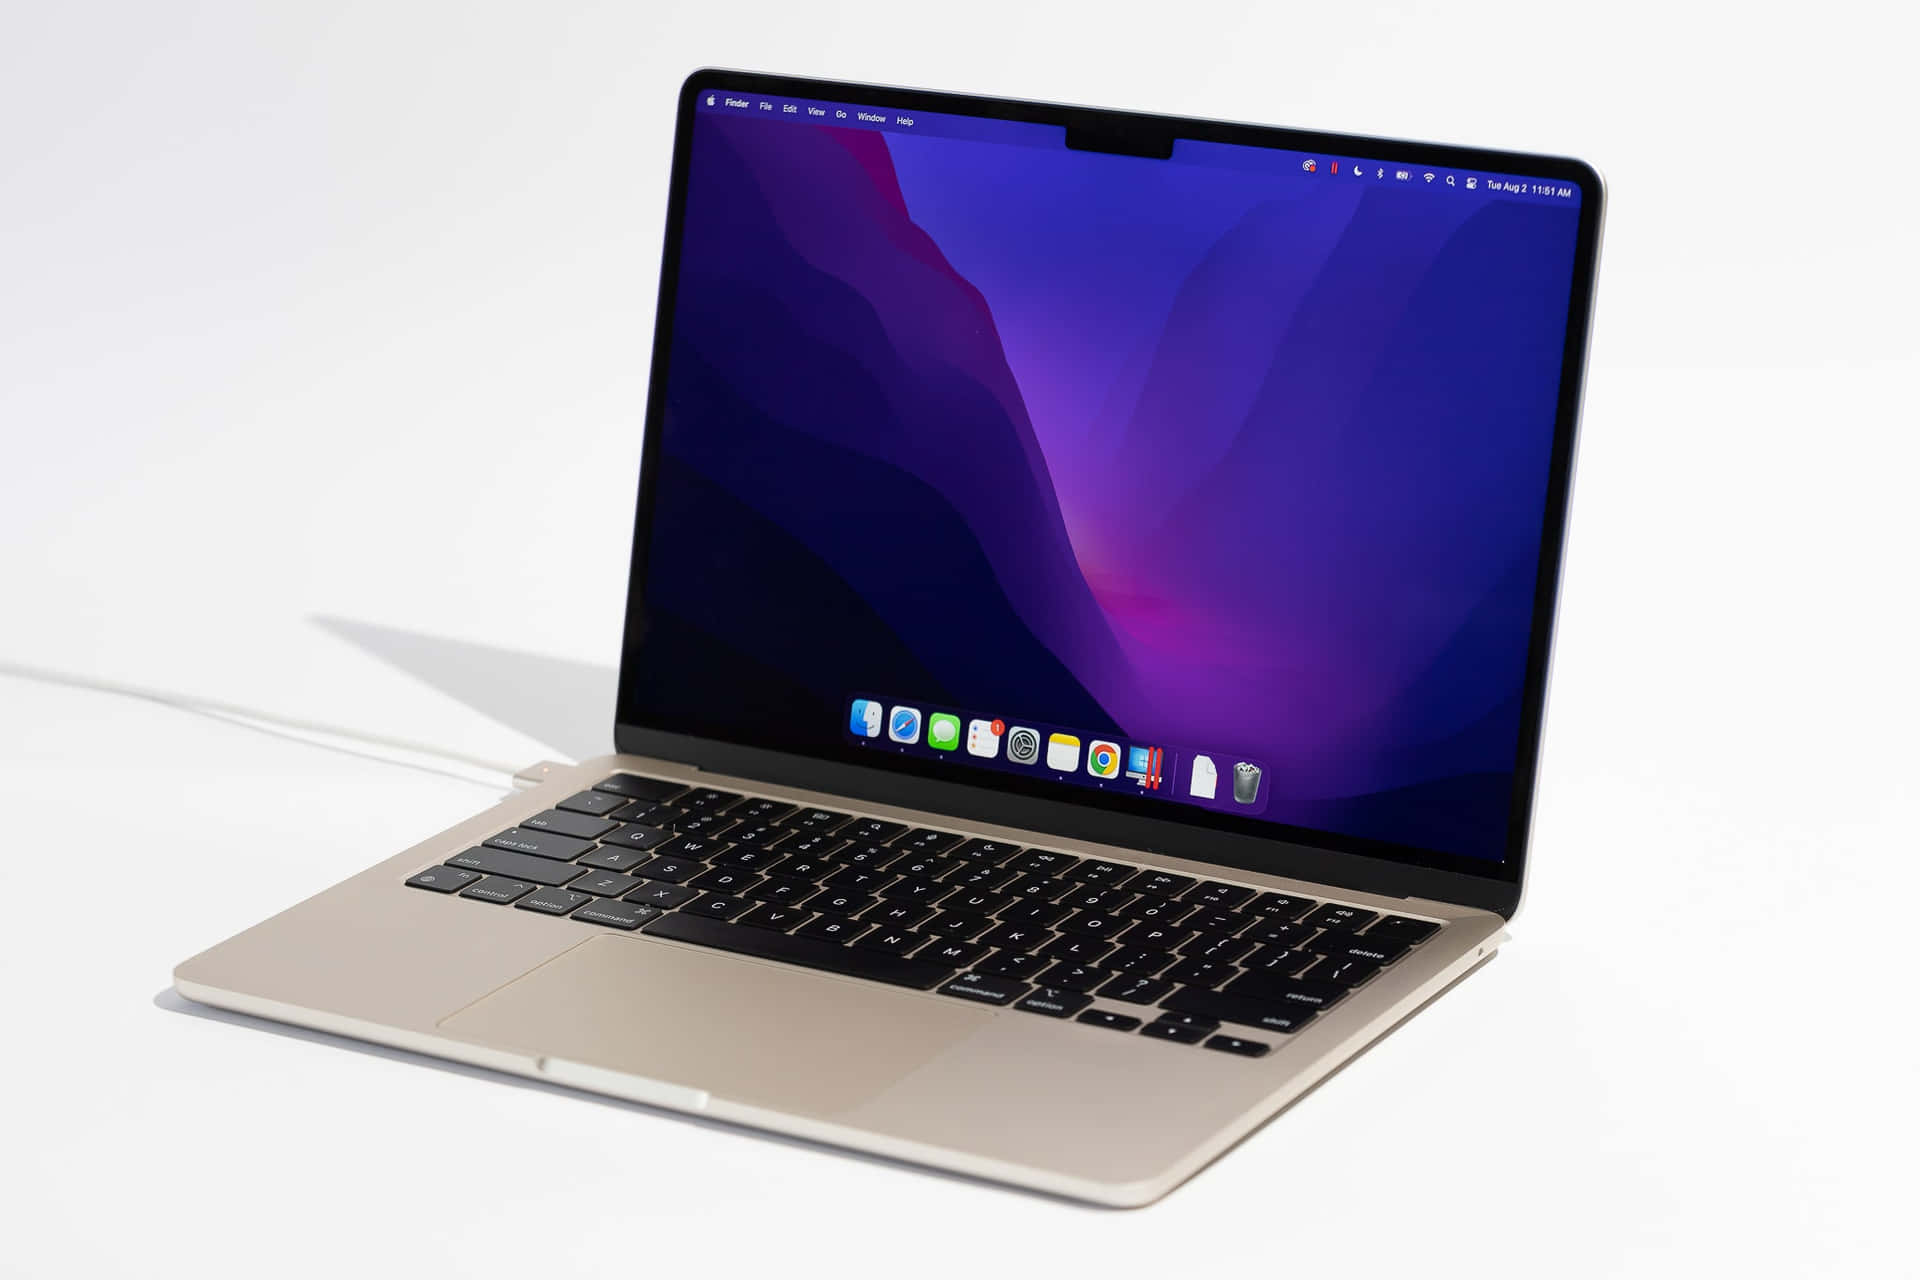 Sleek Apple Mac Setup With Dual Screens And Keyboard